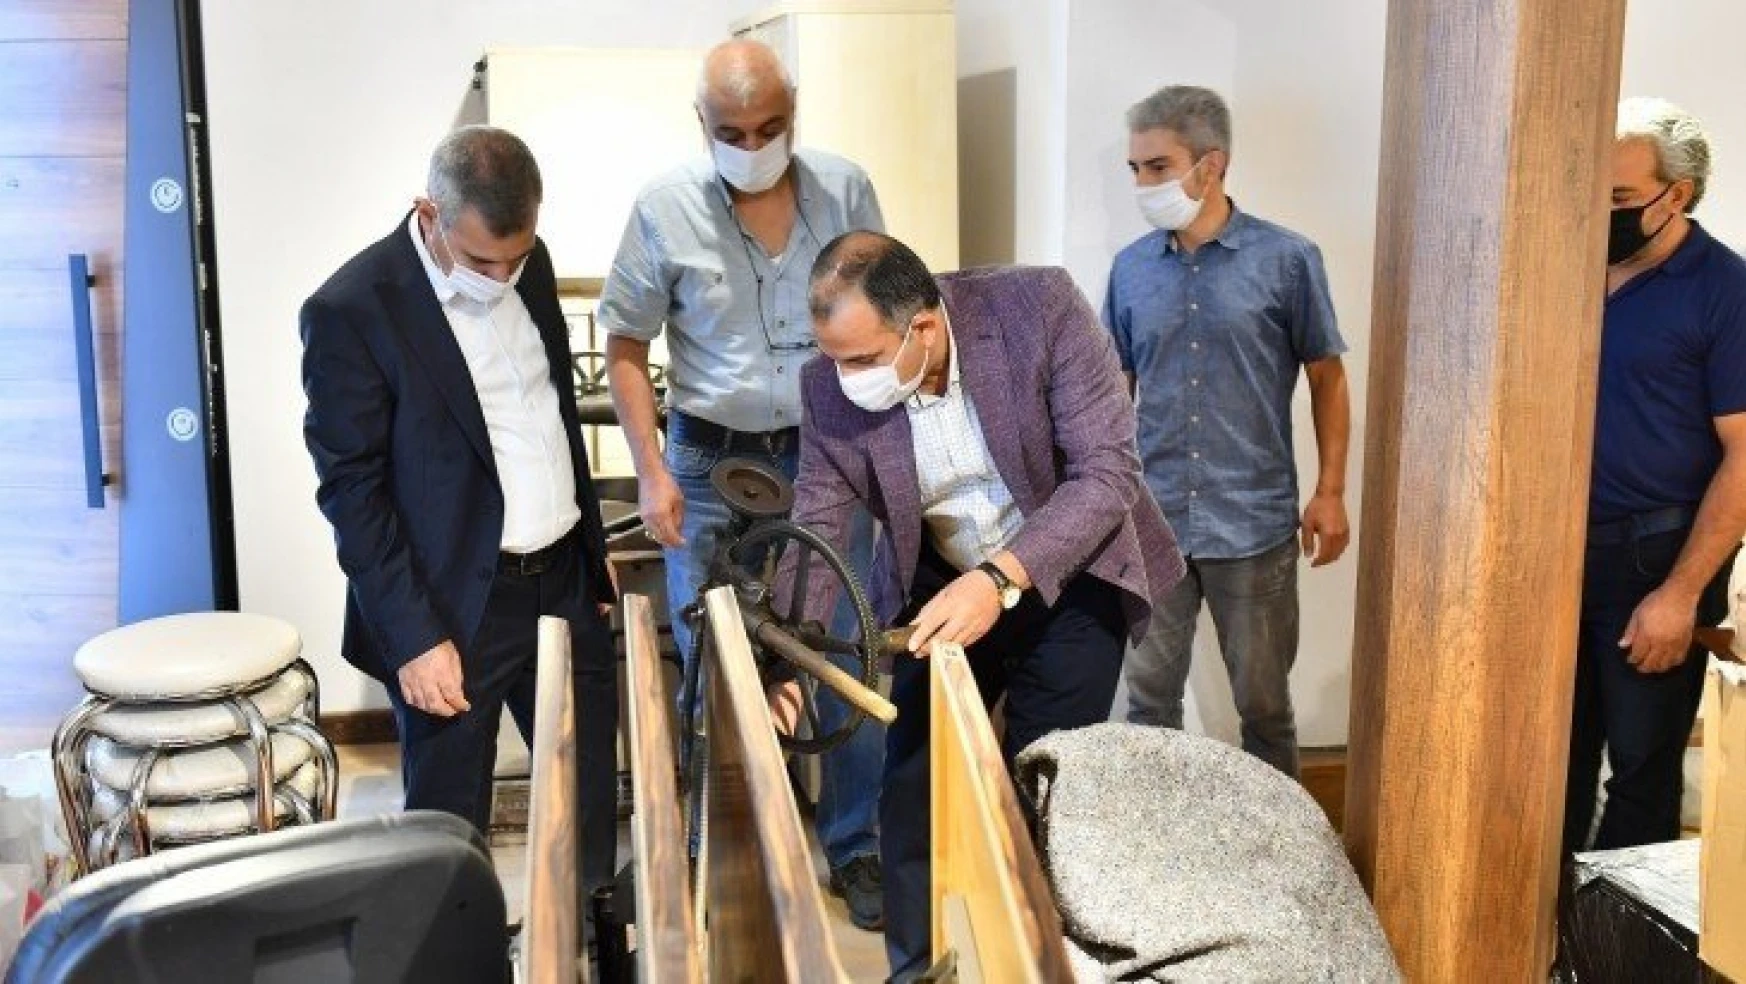 Tekstil Müzesi, Dokumacılık Mesleğinin Önemini Ortaya Çıkartacak